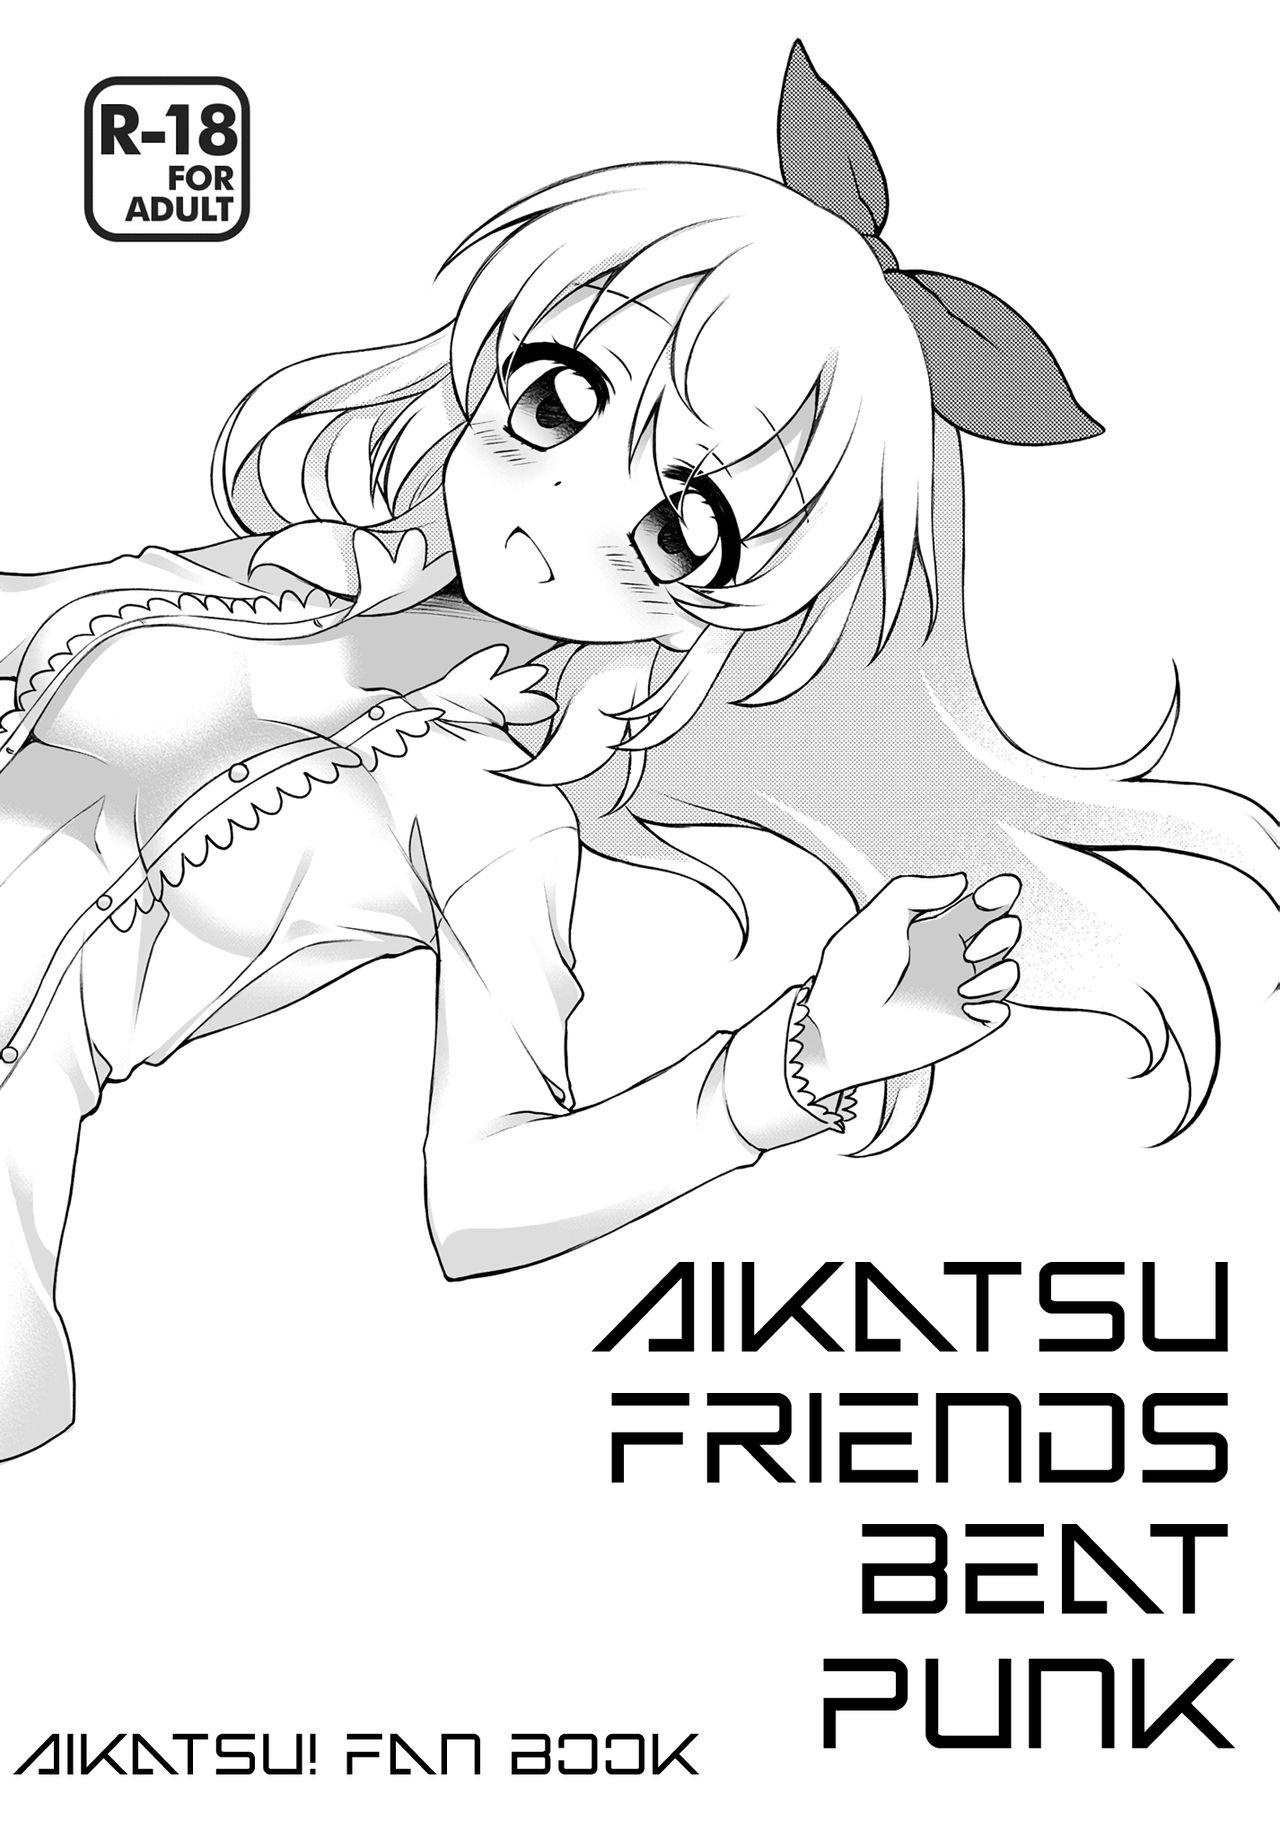 Aikatsu Friends Beat Punk 0